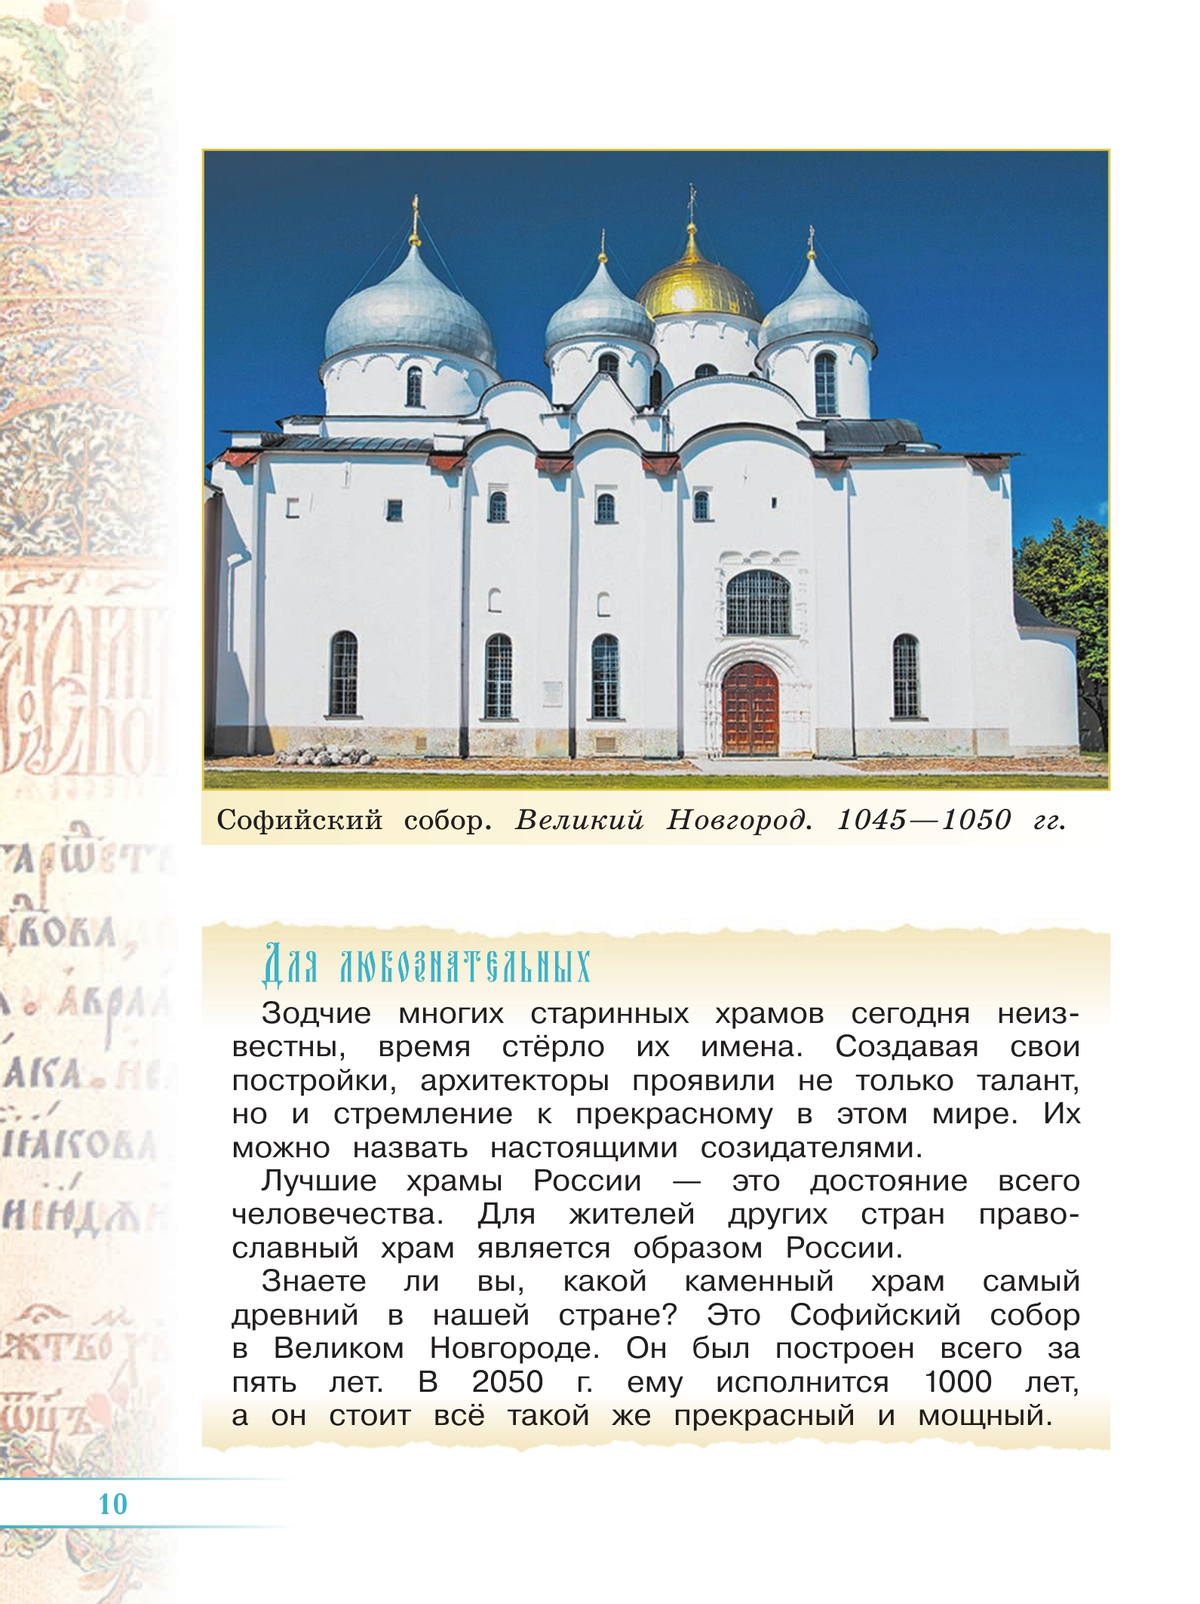 Православная культура - духовный стержень русского народа